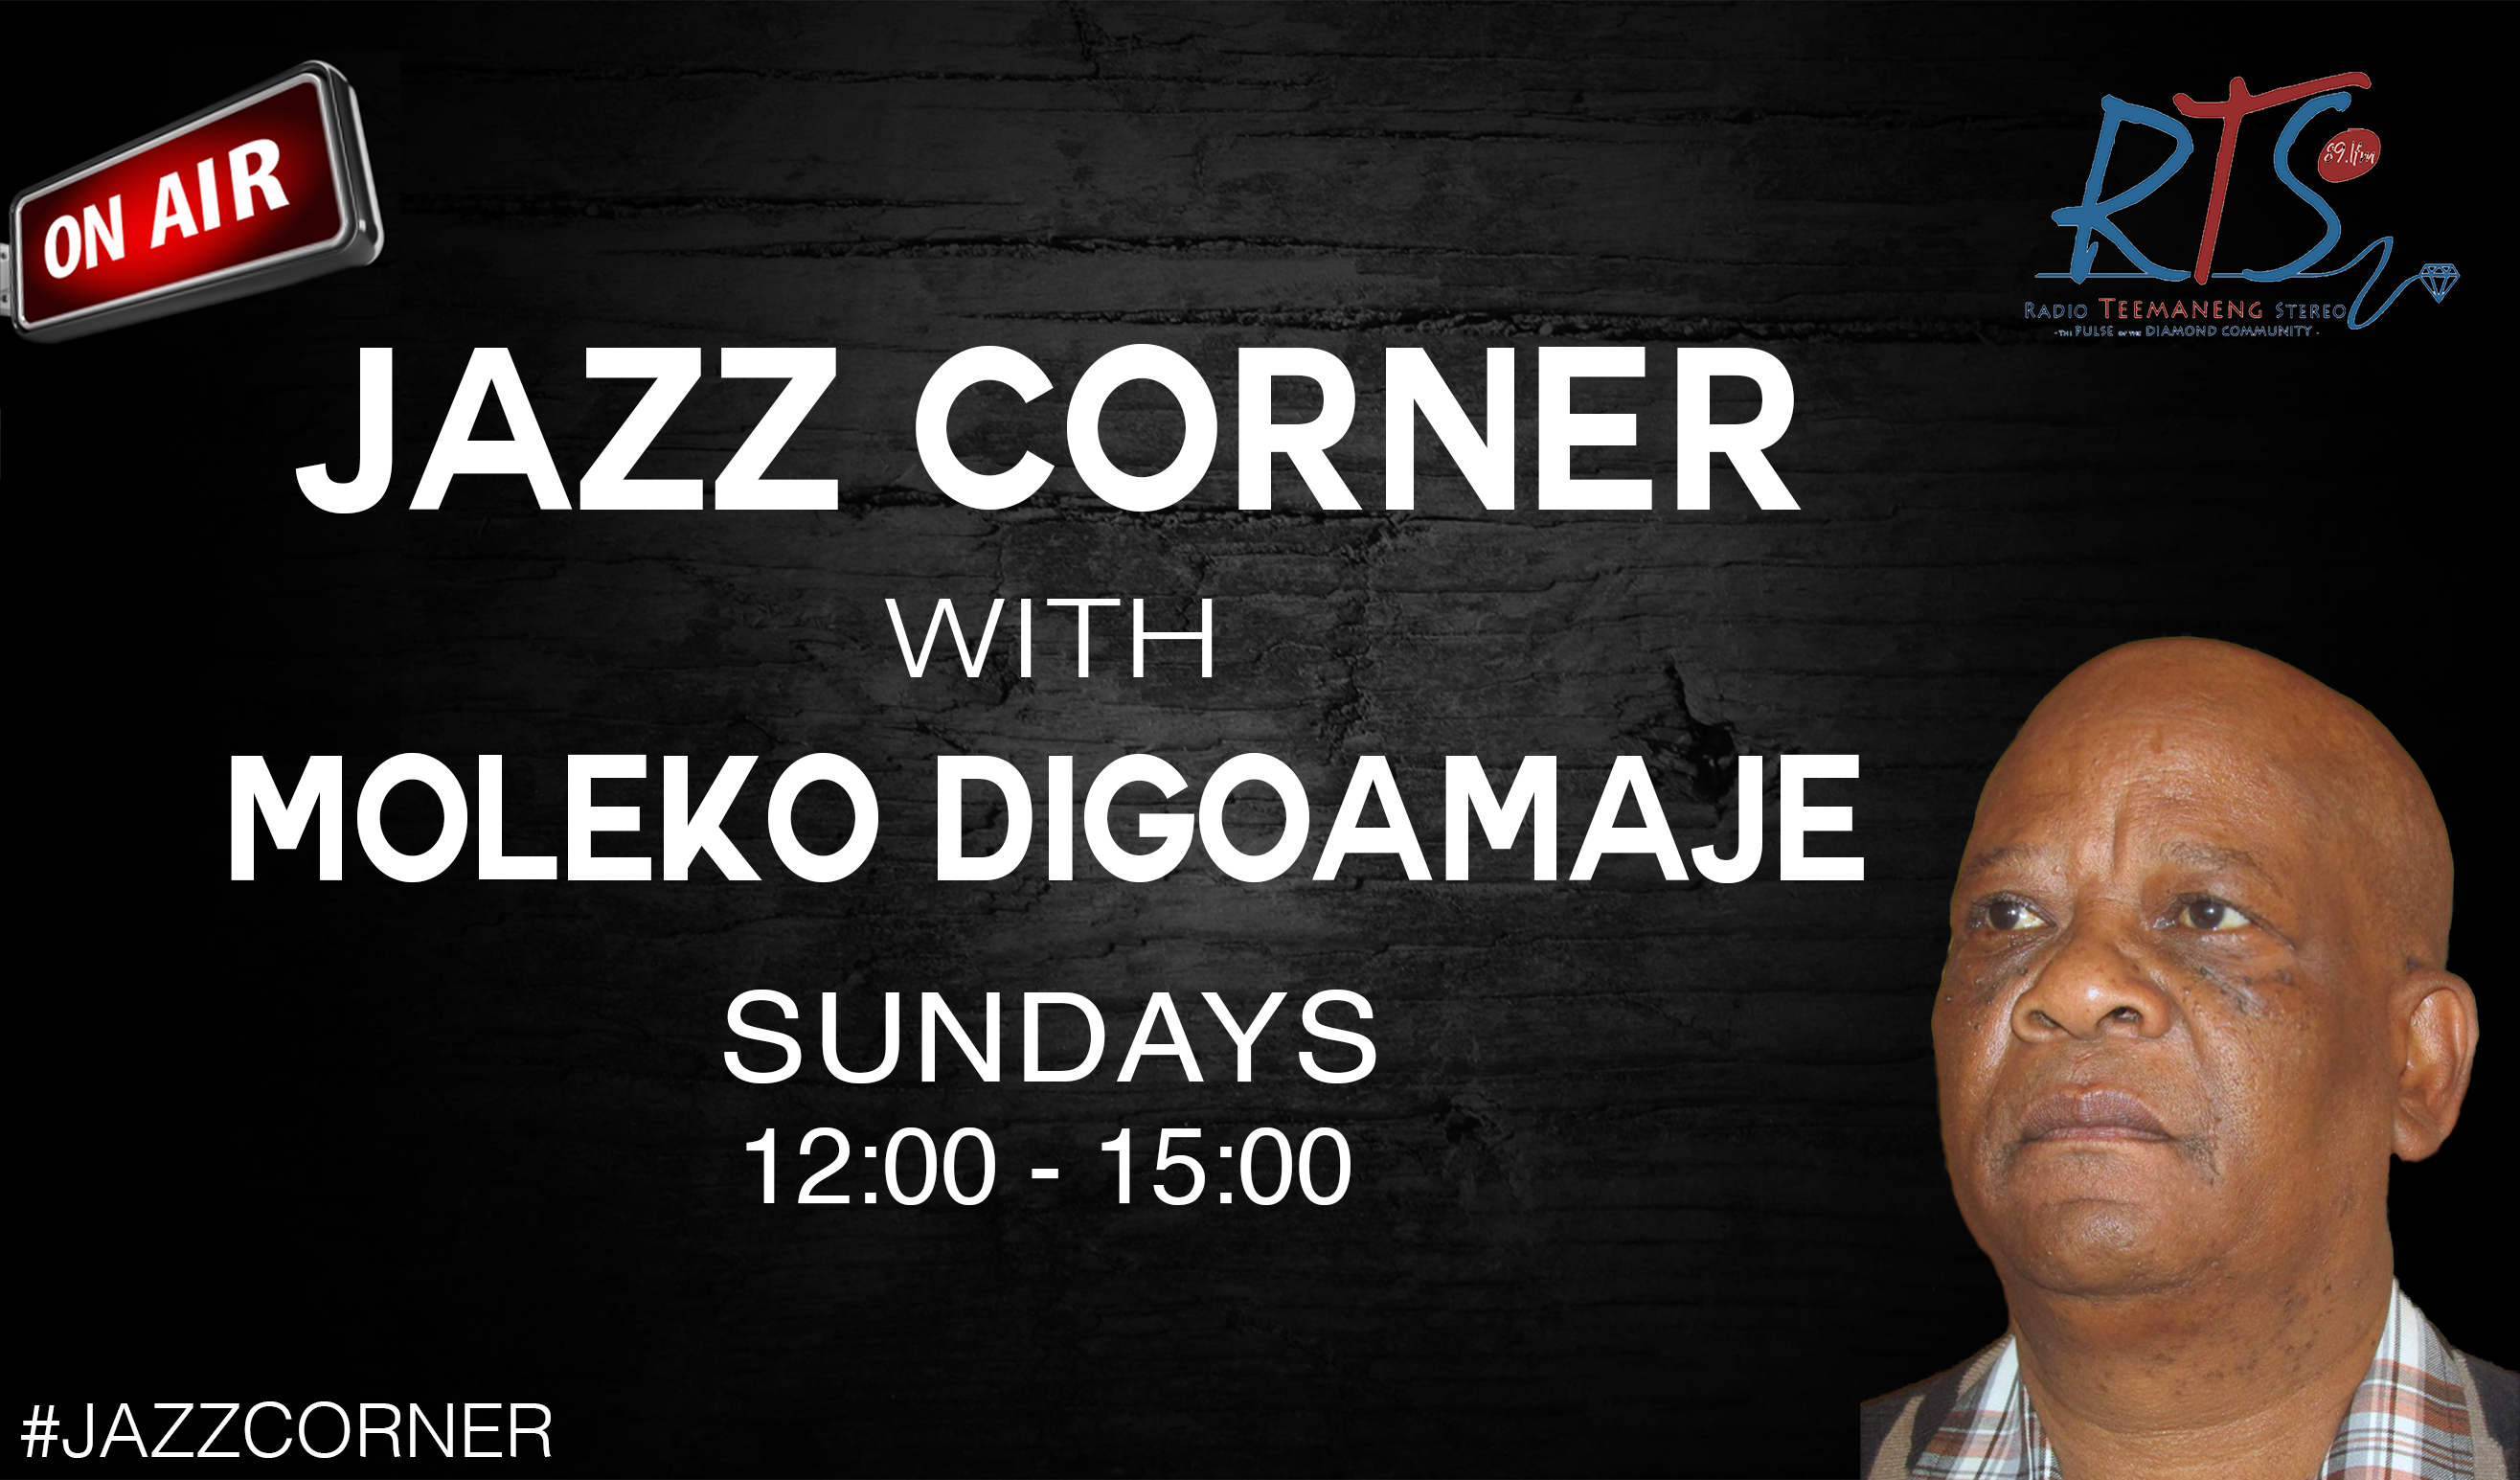 Jazz Corner Sundays 12:00 - 15:00